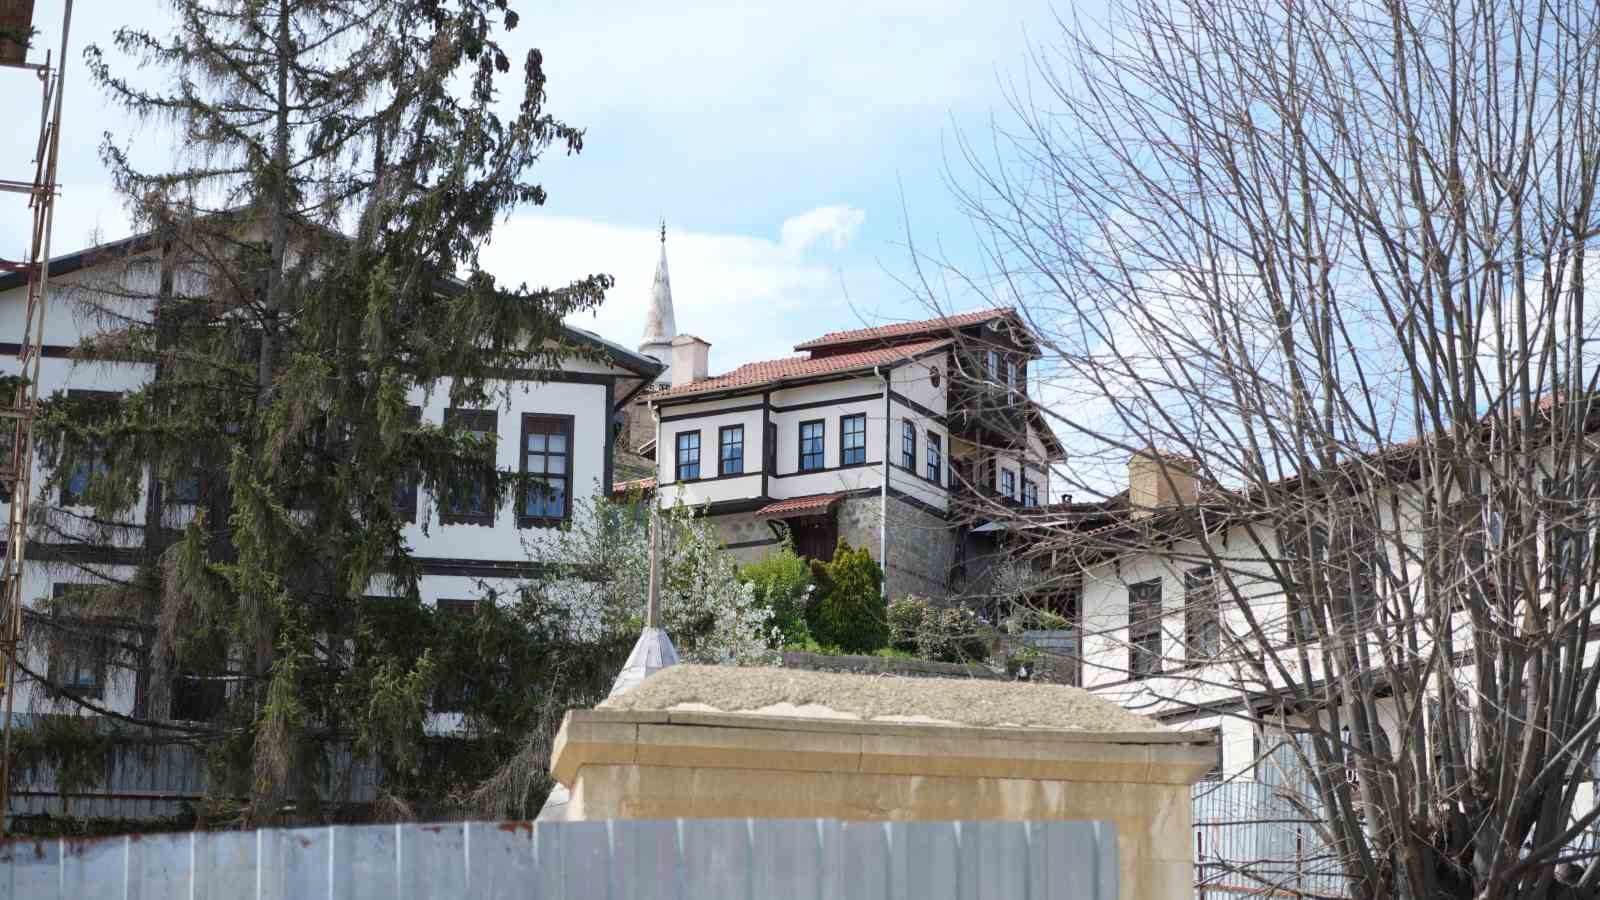 osmanlinin ilk fethettigi topraklardaki bu evler gorenleri tarihi yolculuga cikariyor 2 GHLmMcZW